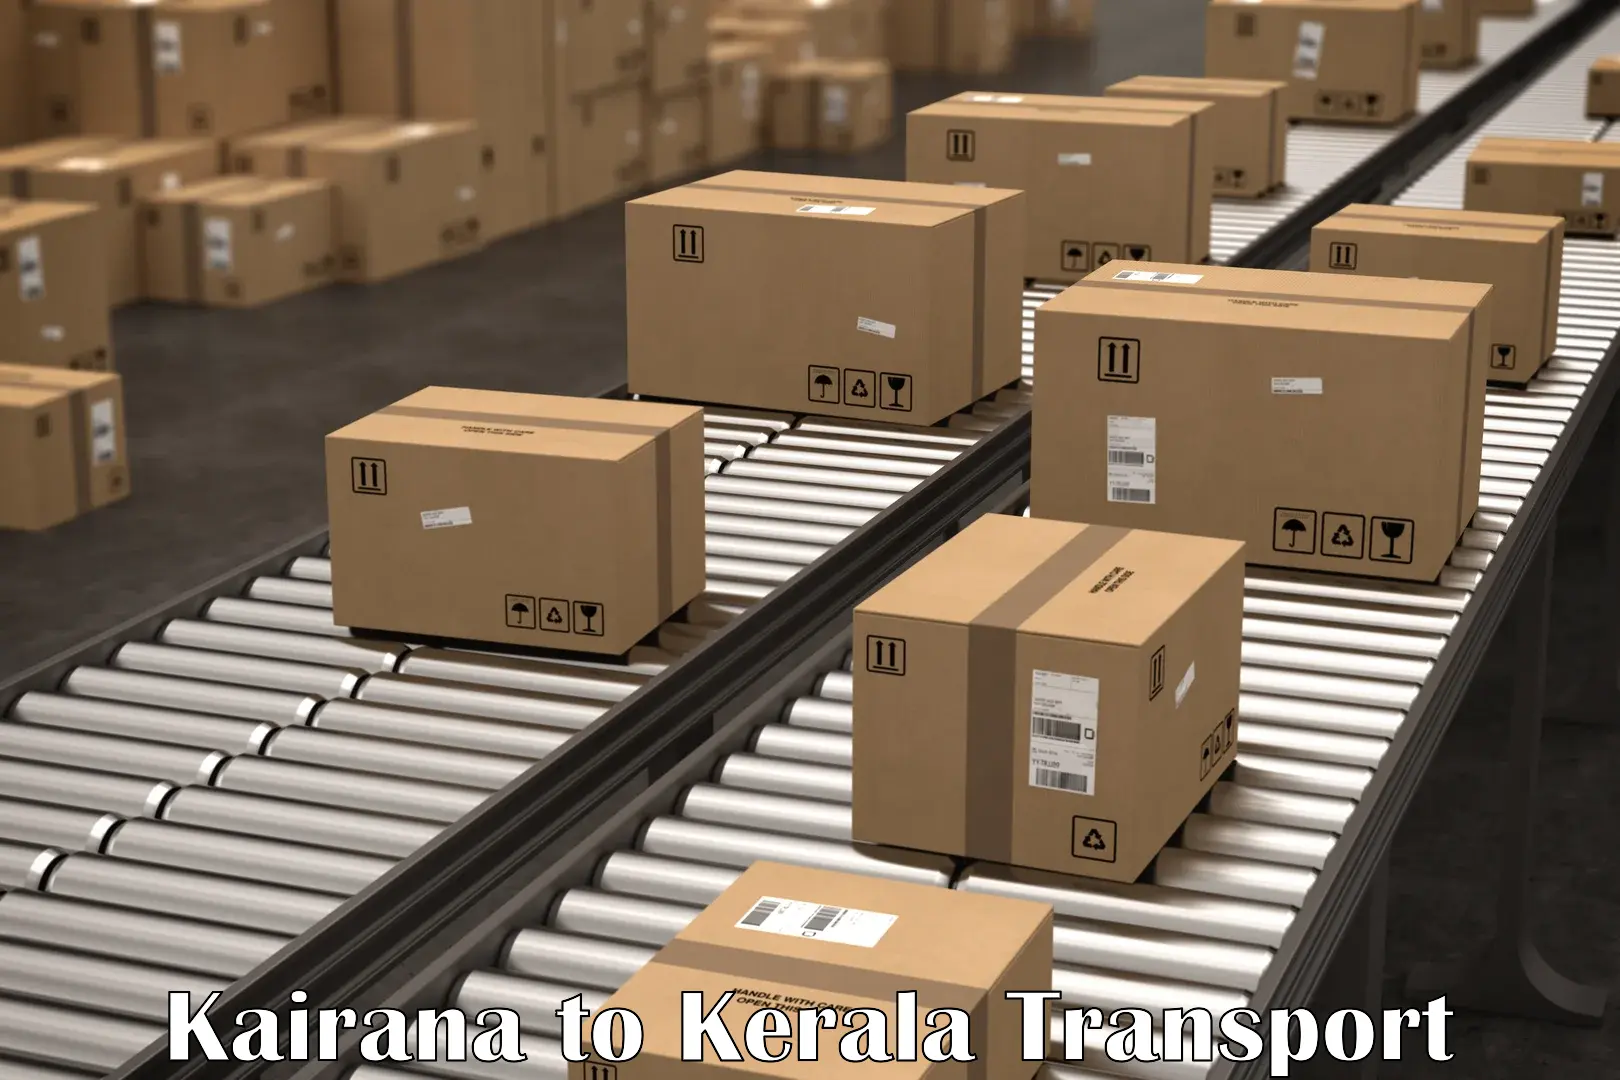 Nearest transport service Kairana to Irinjalakuda